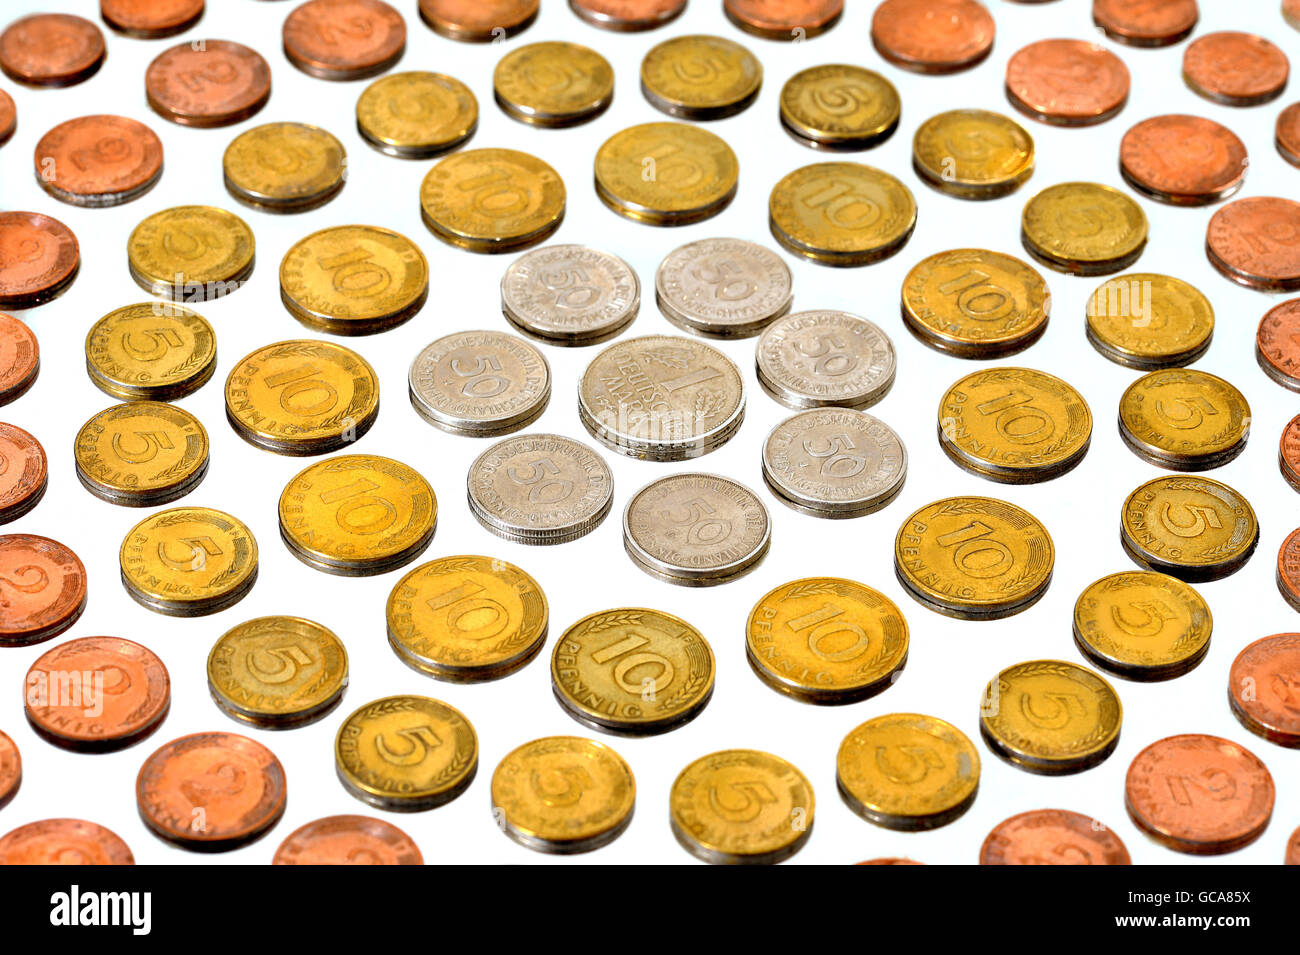 Dinero / finanzas,monedas 1948,Alemania,Deutschmark,piezas de 5 Pfennig,piezas de 2 Pfennig,piezas de 50 pfennig,muchas,muchas,muchas,de,umteen,conjuntos,conjunto,patrón,patrones,2,5,10,50,10-Pfennig piezas,piezas de 5 Pfennig,piezas de 2 Pfennig,piezas de 2001 Pfennig,moneda,moneda,moneda,moneda,moneda,moneda,moneda,moneda,moneda,moneda,moneda,moneda,moneda,moneda,moneda,moneda,moneda,moneda,moneda,moneda,moneda,moneda,moneda,moneda,moneda,no,moneda,moneda,moneda,moneda,moneda,moneda,moneda,moneda,moneda,moneda,moneda,moneda,moneda,moneda,moneda,moneda,moneda,moneda,moneda,moneda,moneda,moneda,moneda,moneda,moneda Foto de stock